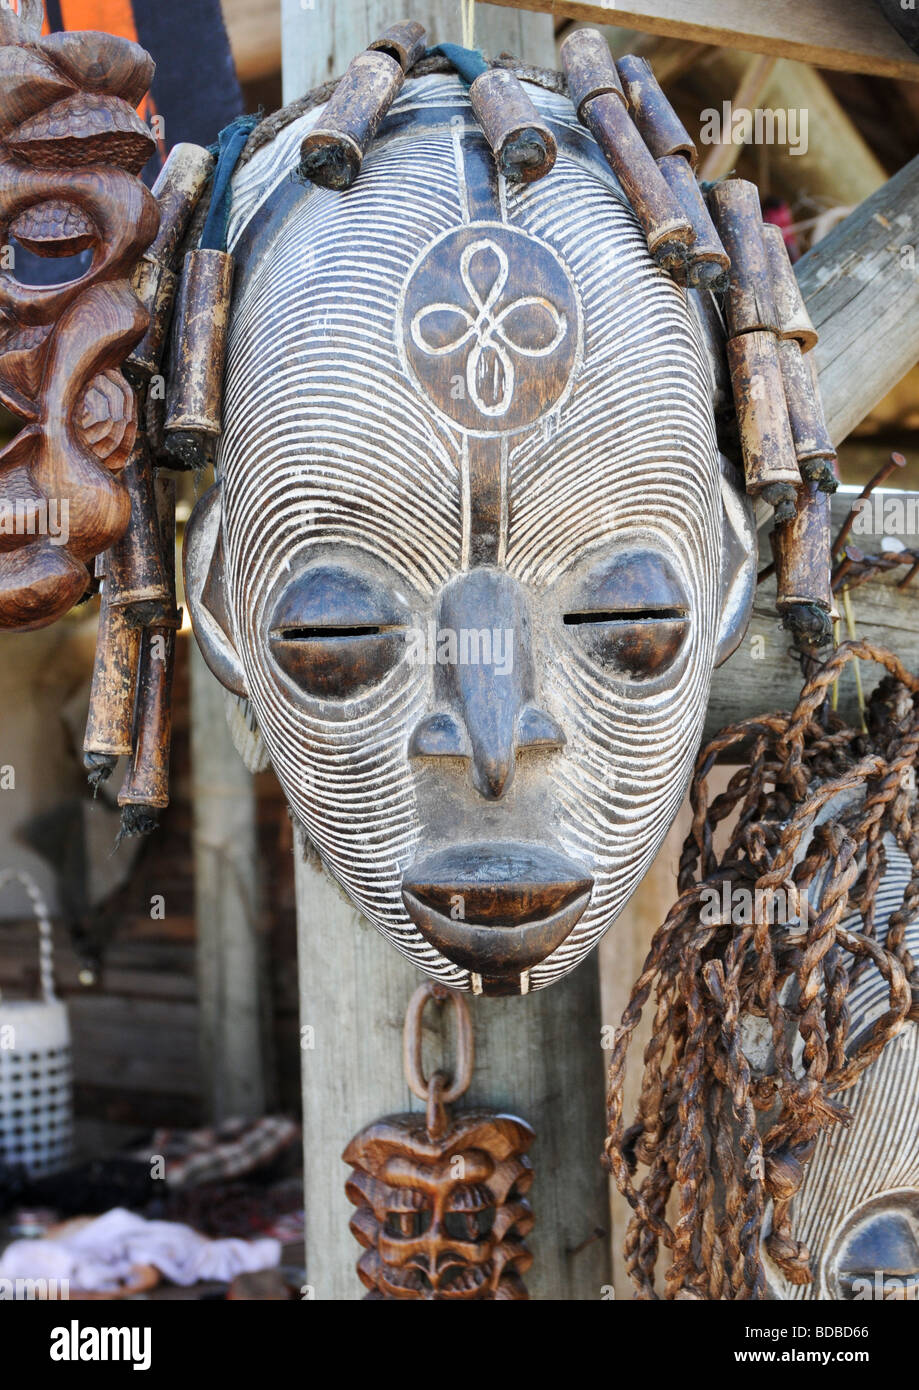 Eine hervorragende Hand geschnitzt und bemalt aus Holz afrikanische Stammes-Gesichtsmaske in weiß mit anderen Kopfschmuck mit einer Schnur befestigt. Stockfoto